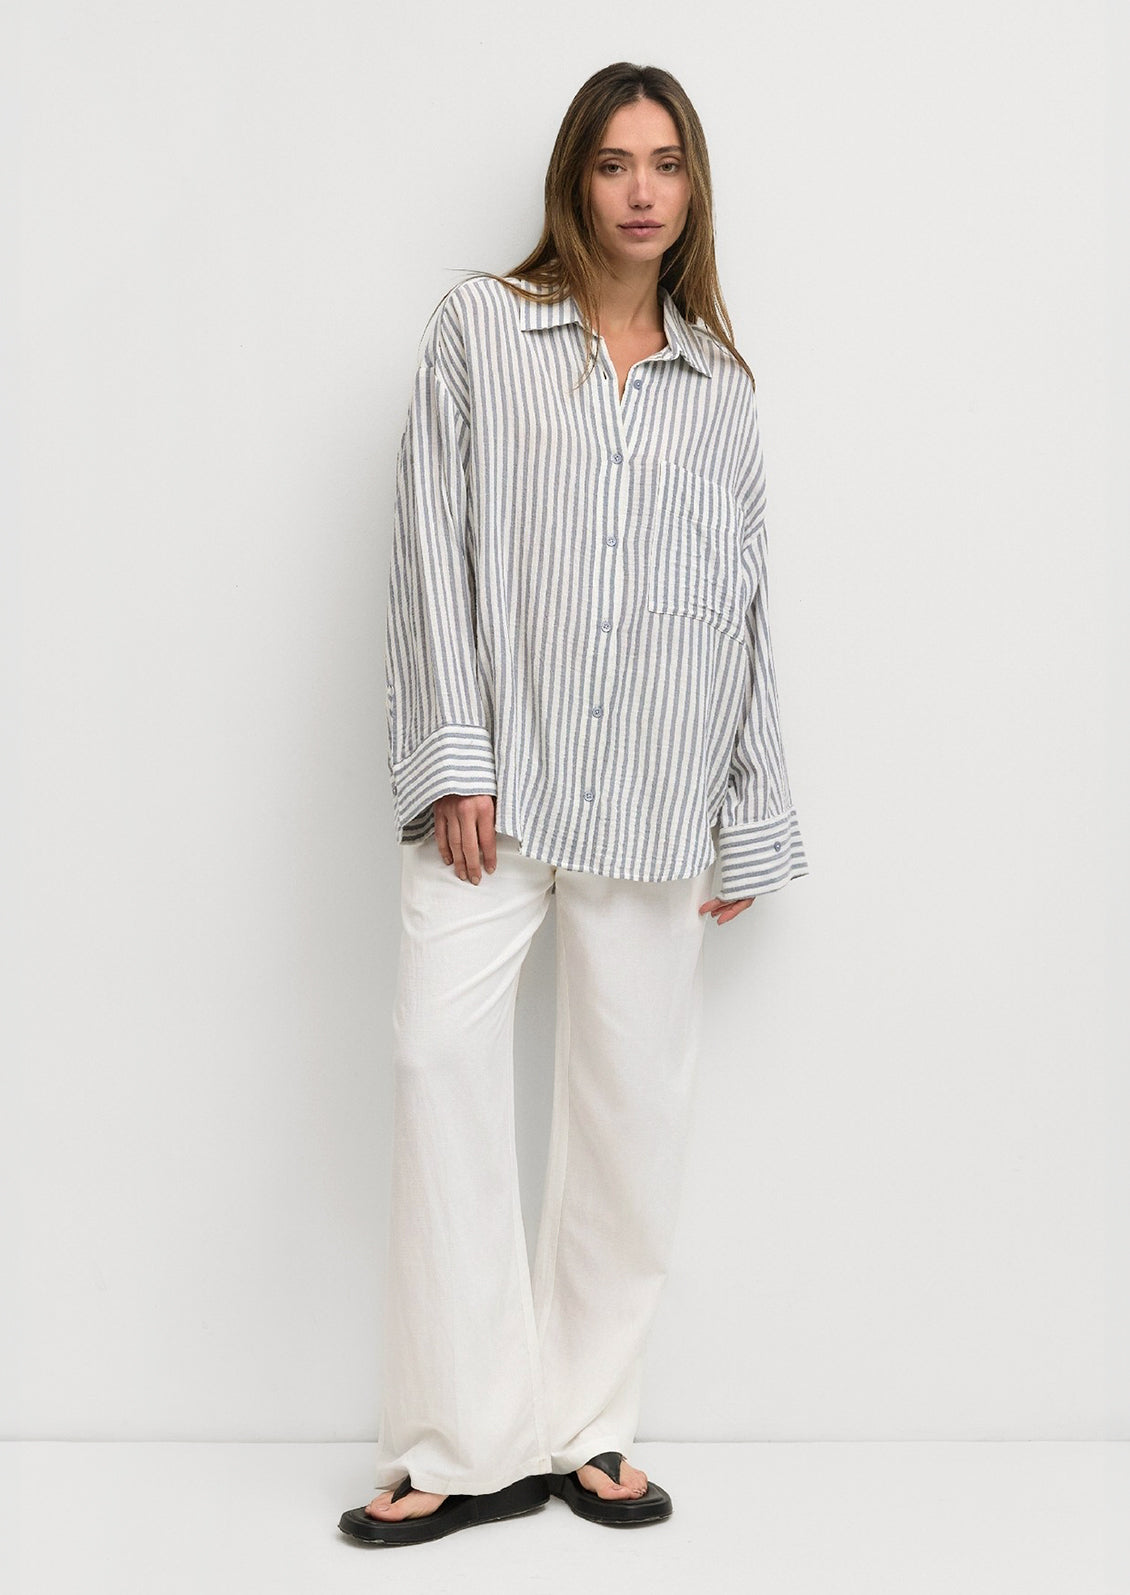 A woman wearing a white and blue stripe cotton gauze button down shirt.